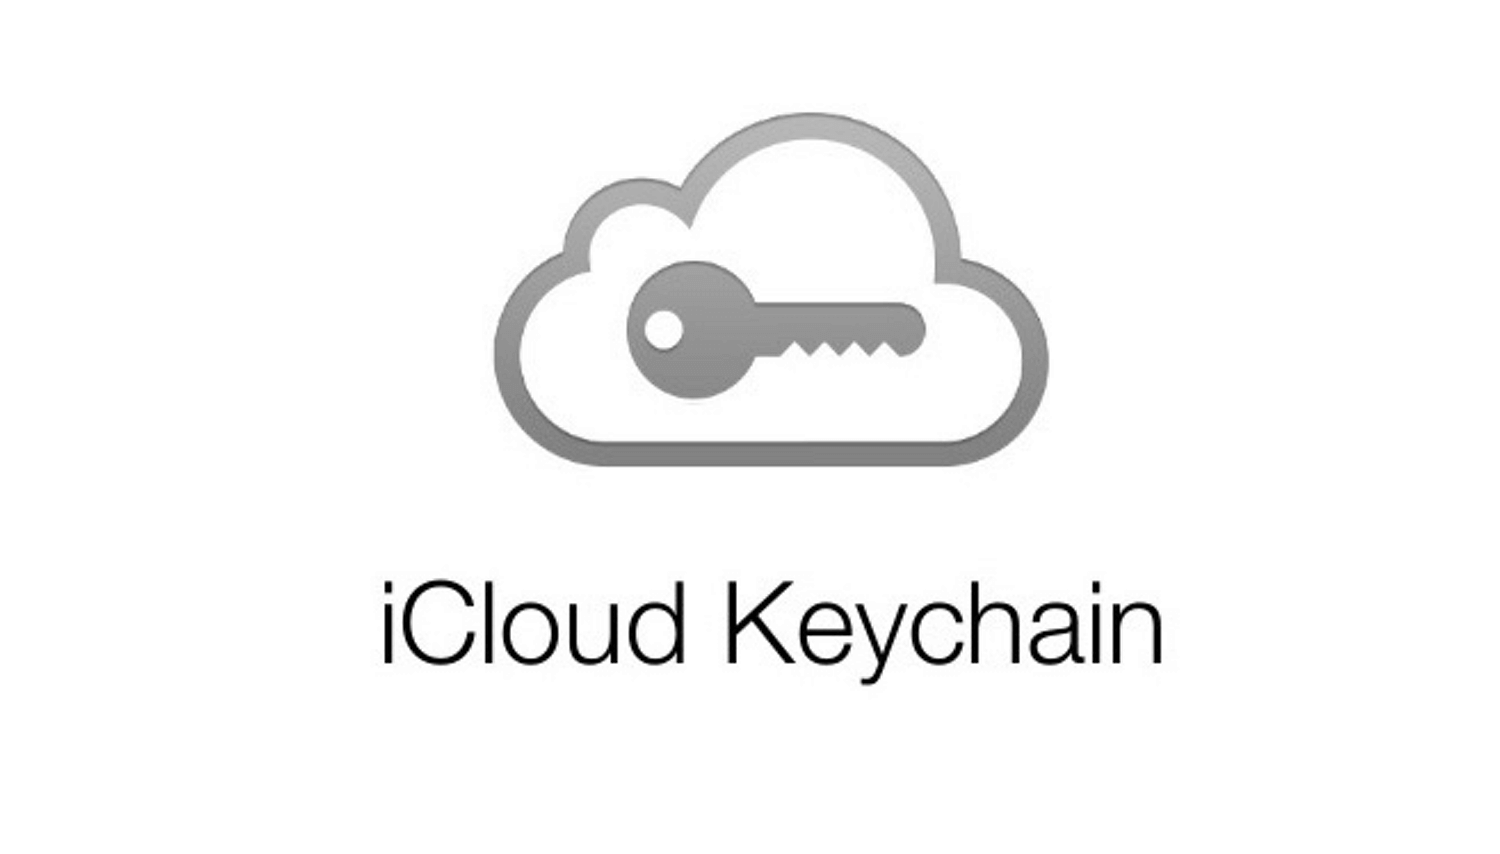 iCloud Keychain (Pęk kluczy w iCloud) - logo